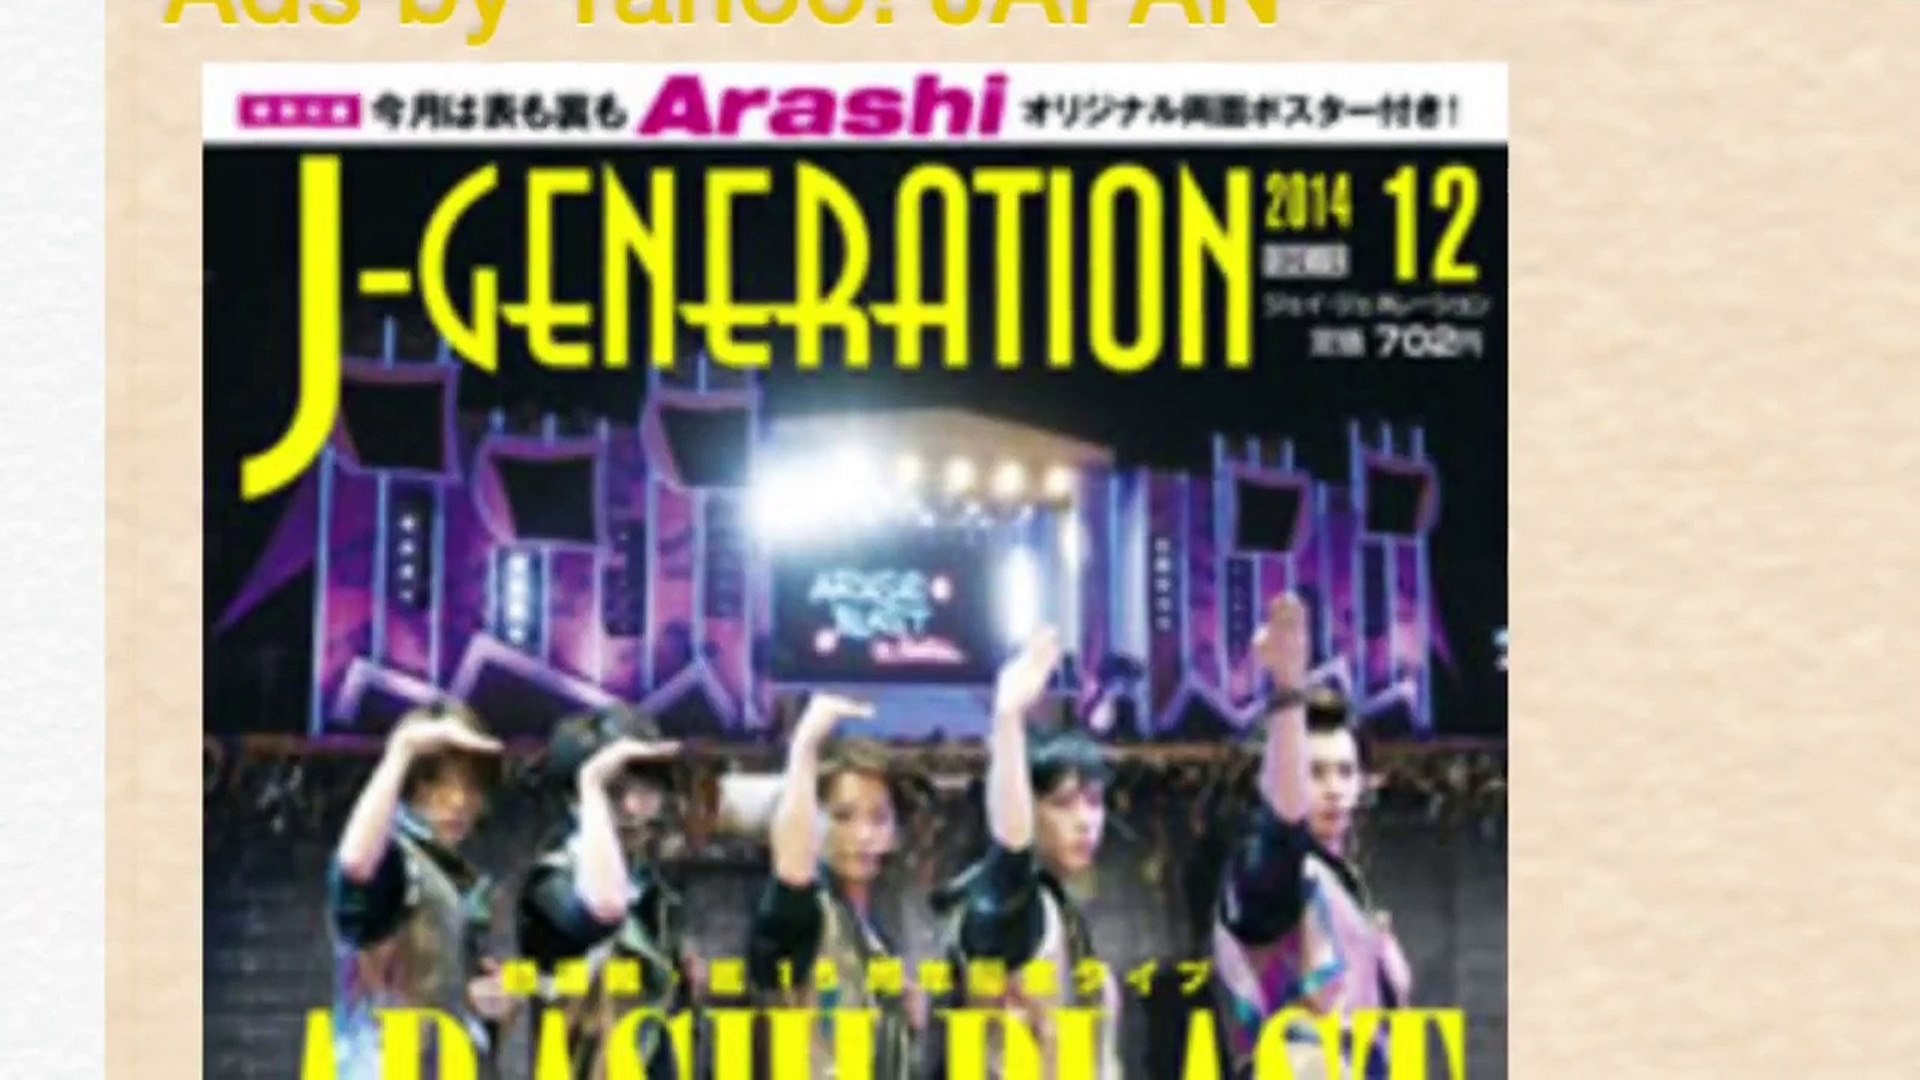 嵐 凄い J Generation １２月号 Arashi Blast Dailymotion Video